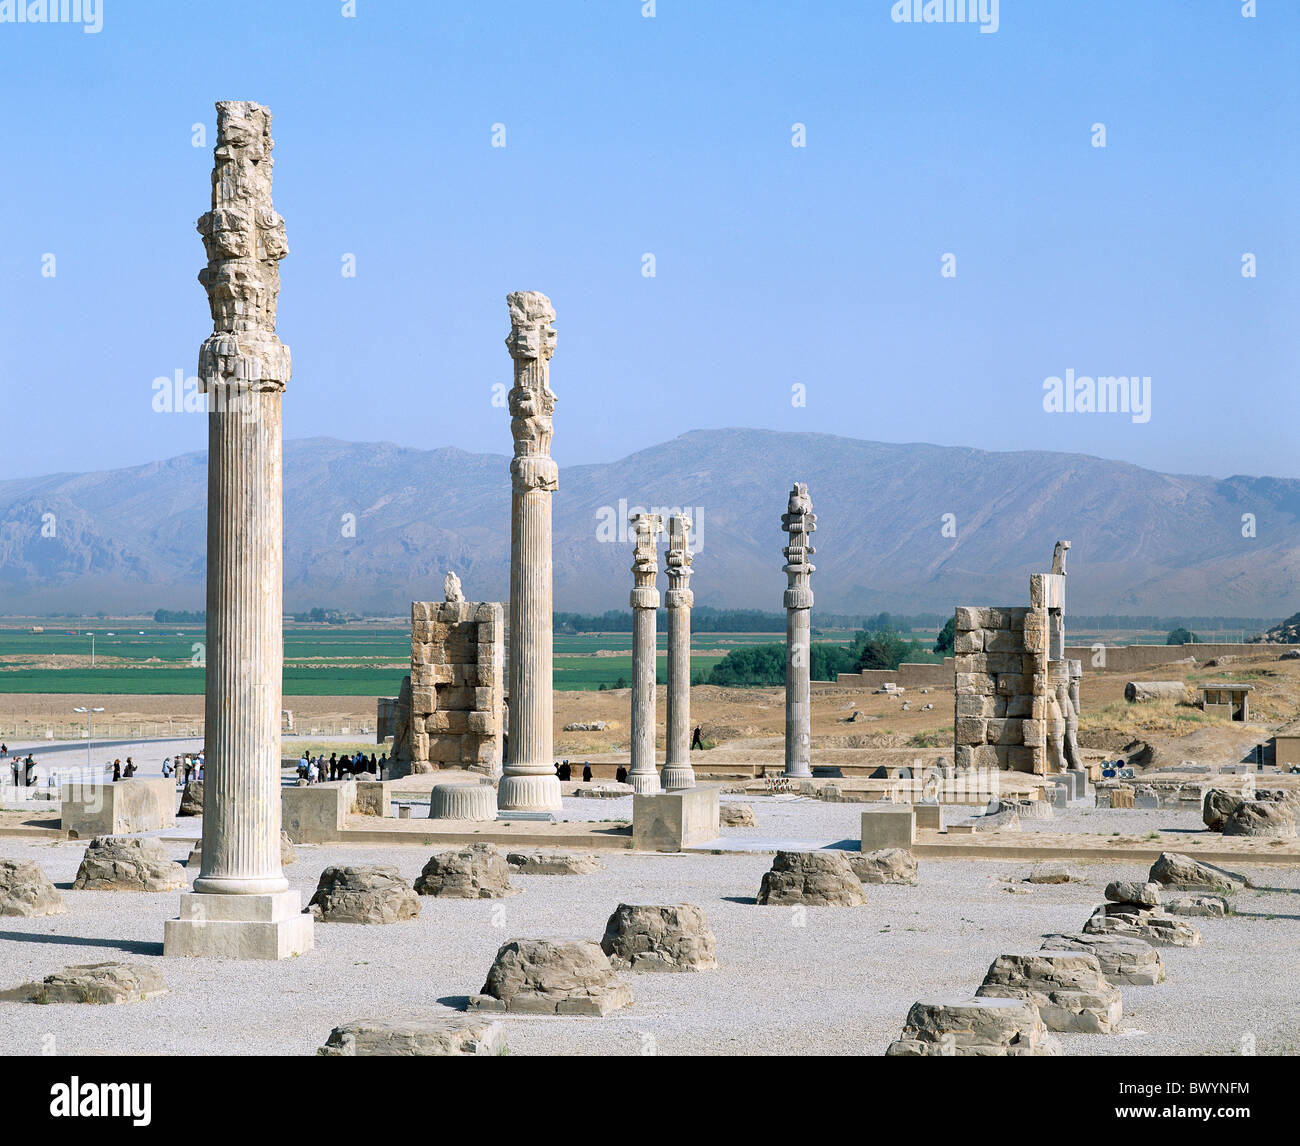 Apadana derrière Xerxès gate Iran Moyen-orient culture Persépolis colonnes Takht e Jamshid monde antique antiq Banque D'Images